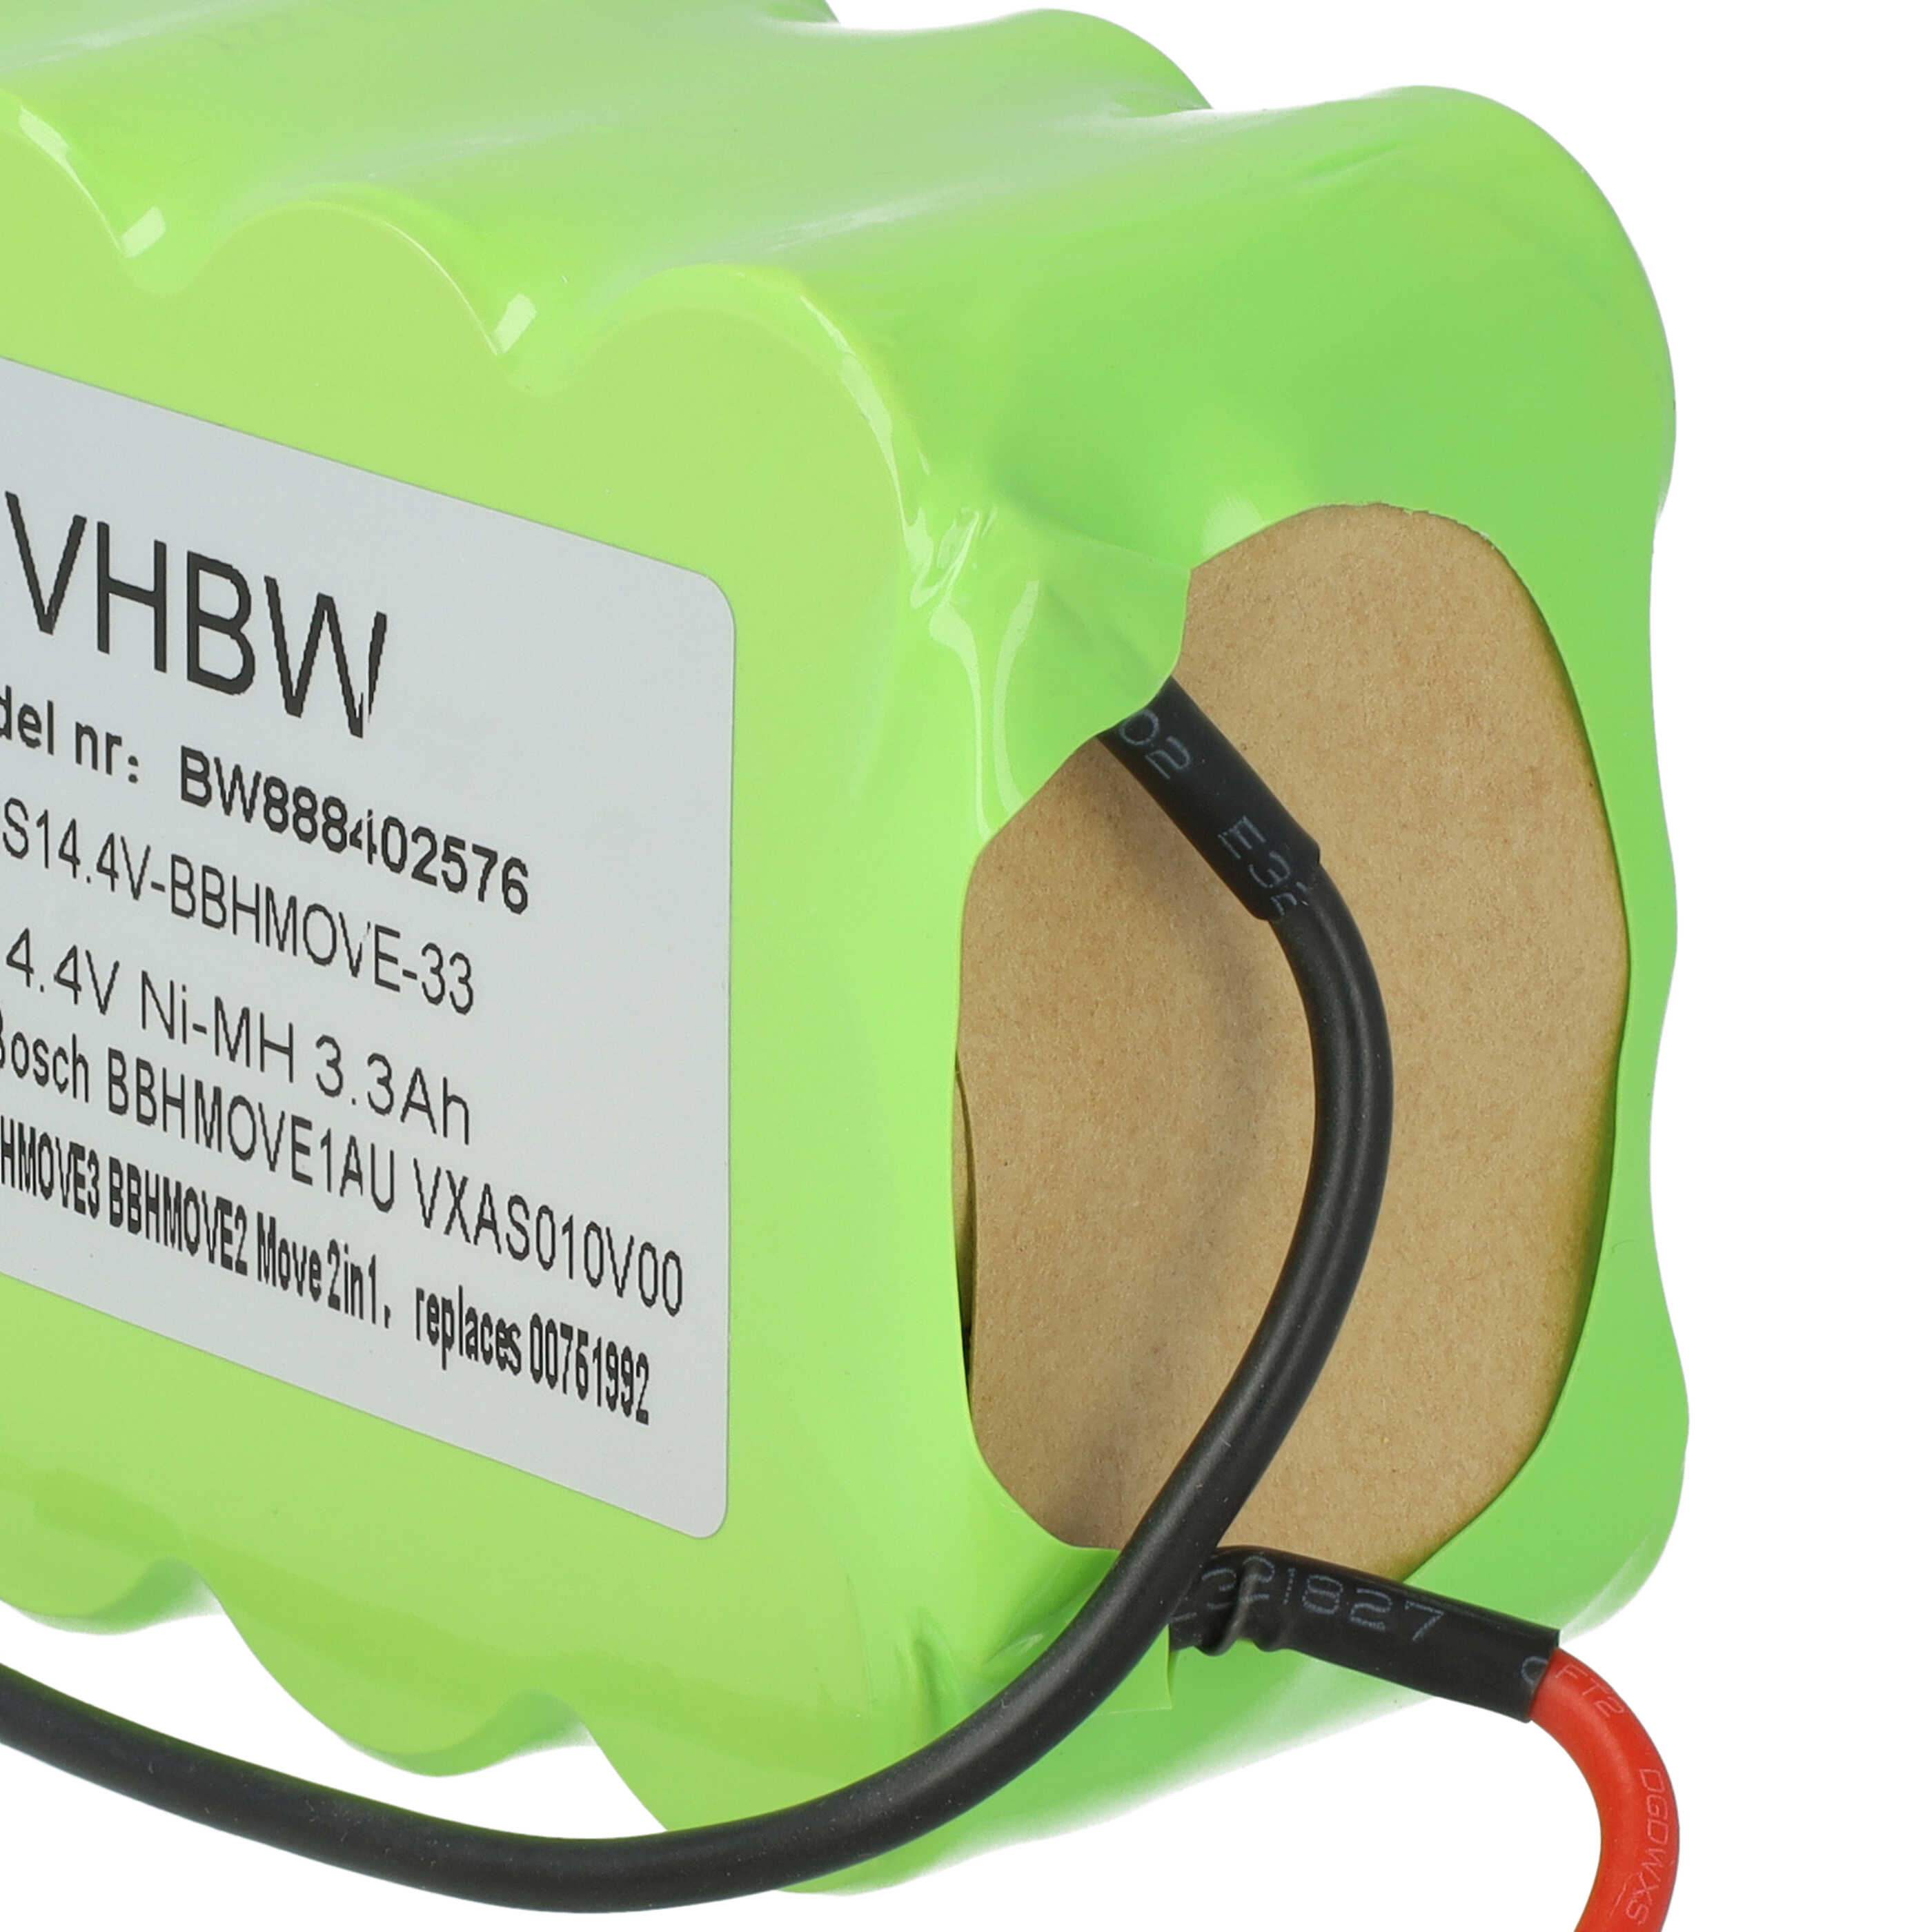 Batteria sostituisce Bosch FD8901, GP180SCHSV12Y2H, 00751992 per aspirapolvere Bosch - 3300mAh 14,4V NiMH